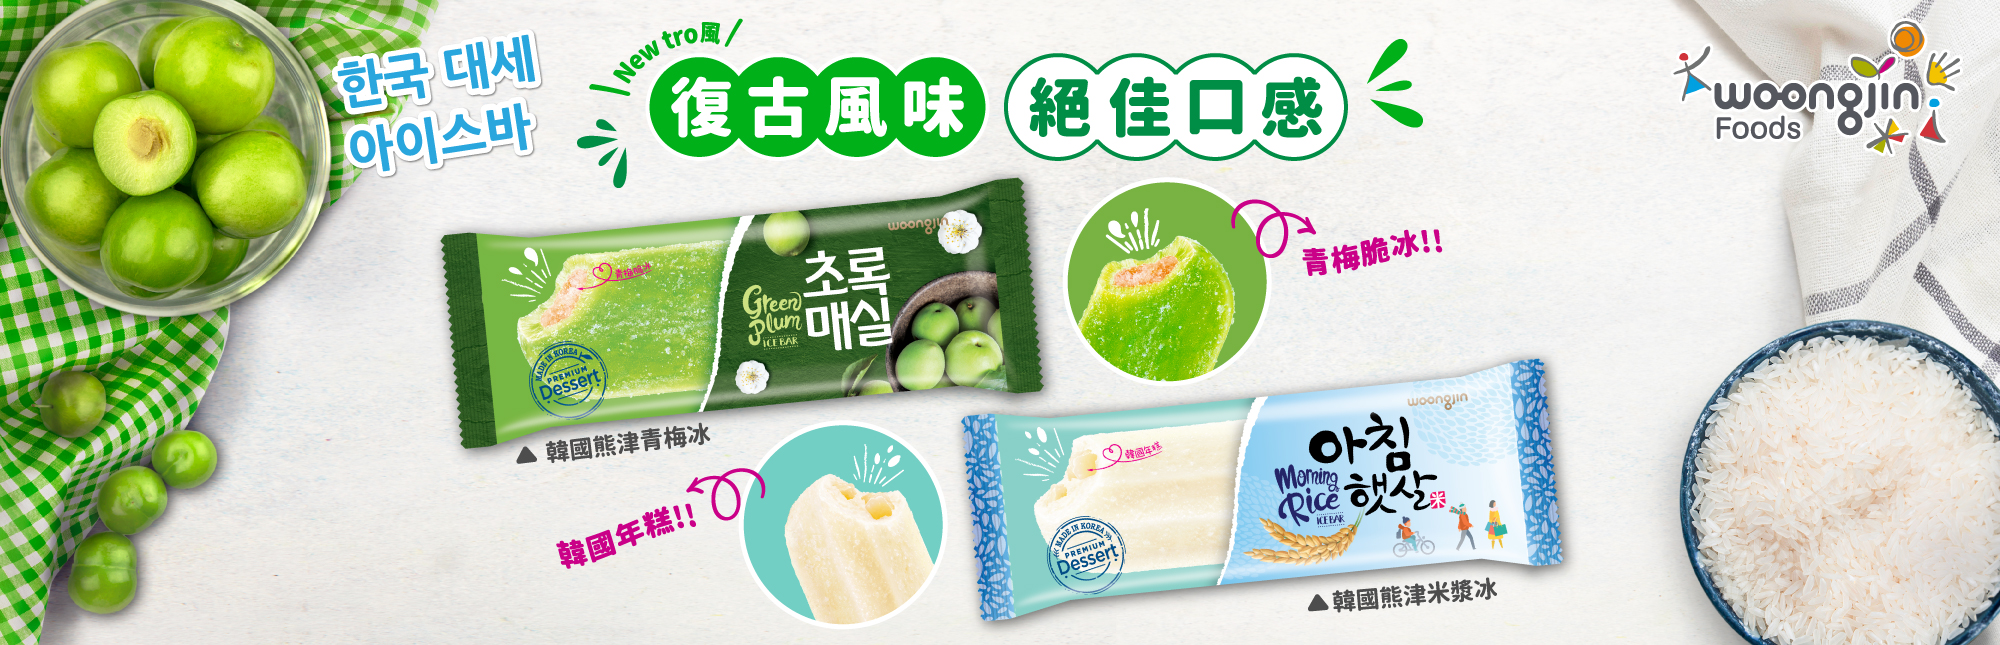 Woongjin Foods(熊津食品)